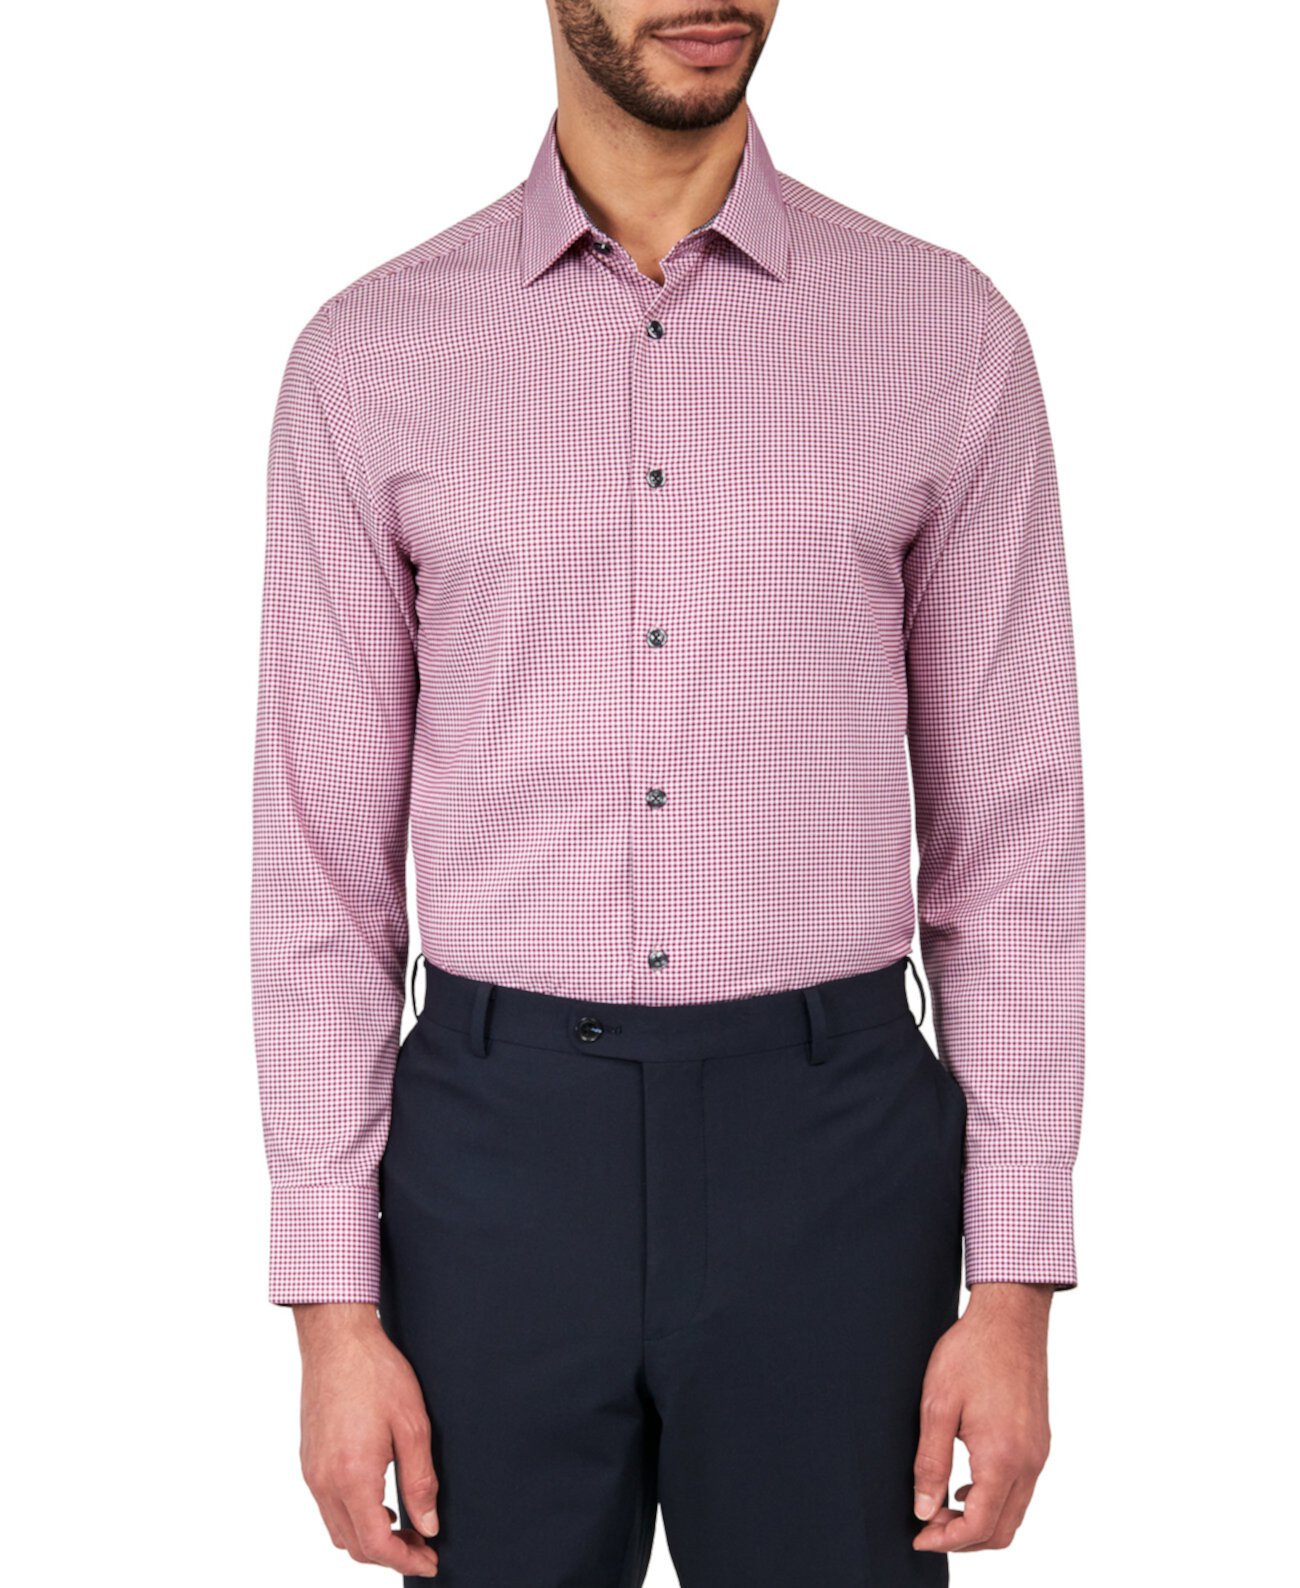 Мужская приталенная классическая рубашка в клетку с эффектом стрейч и охлаждением CONSTRUCT